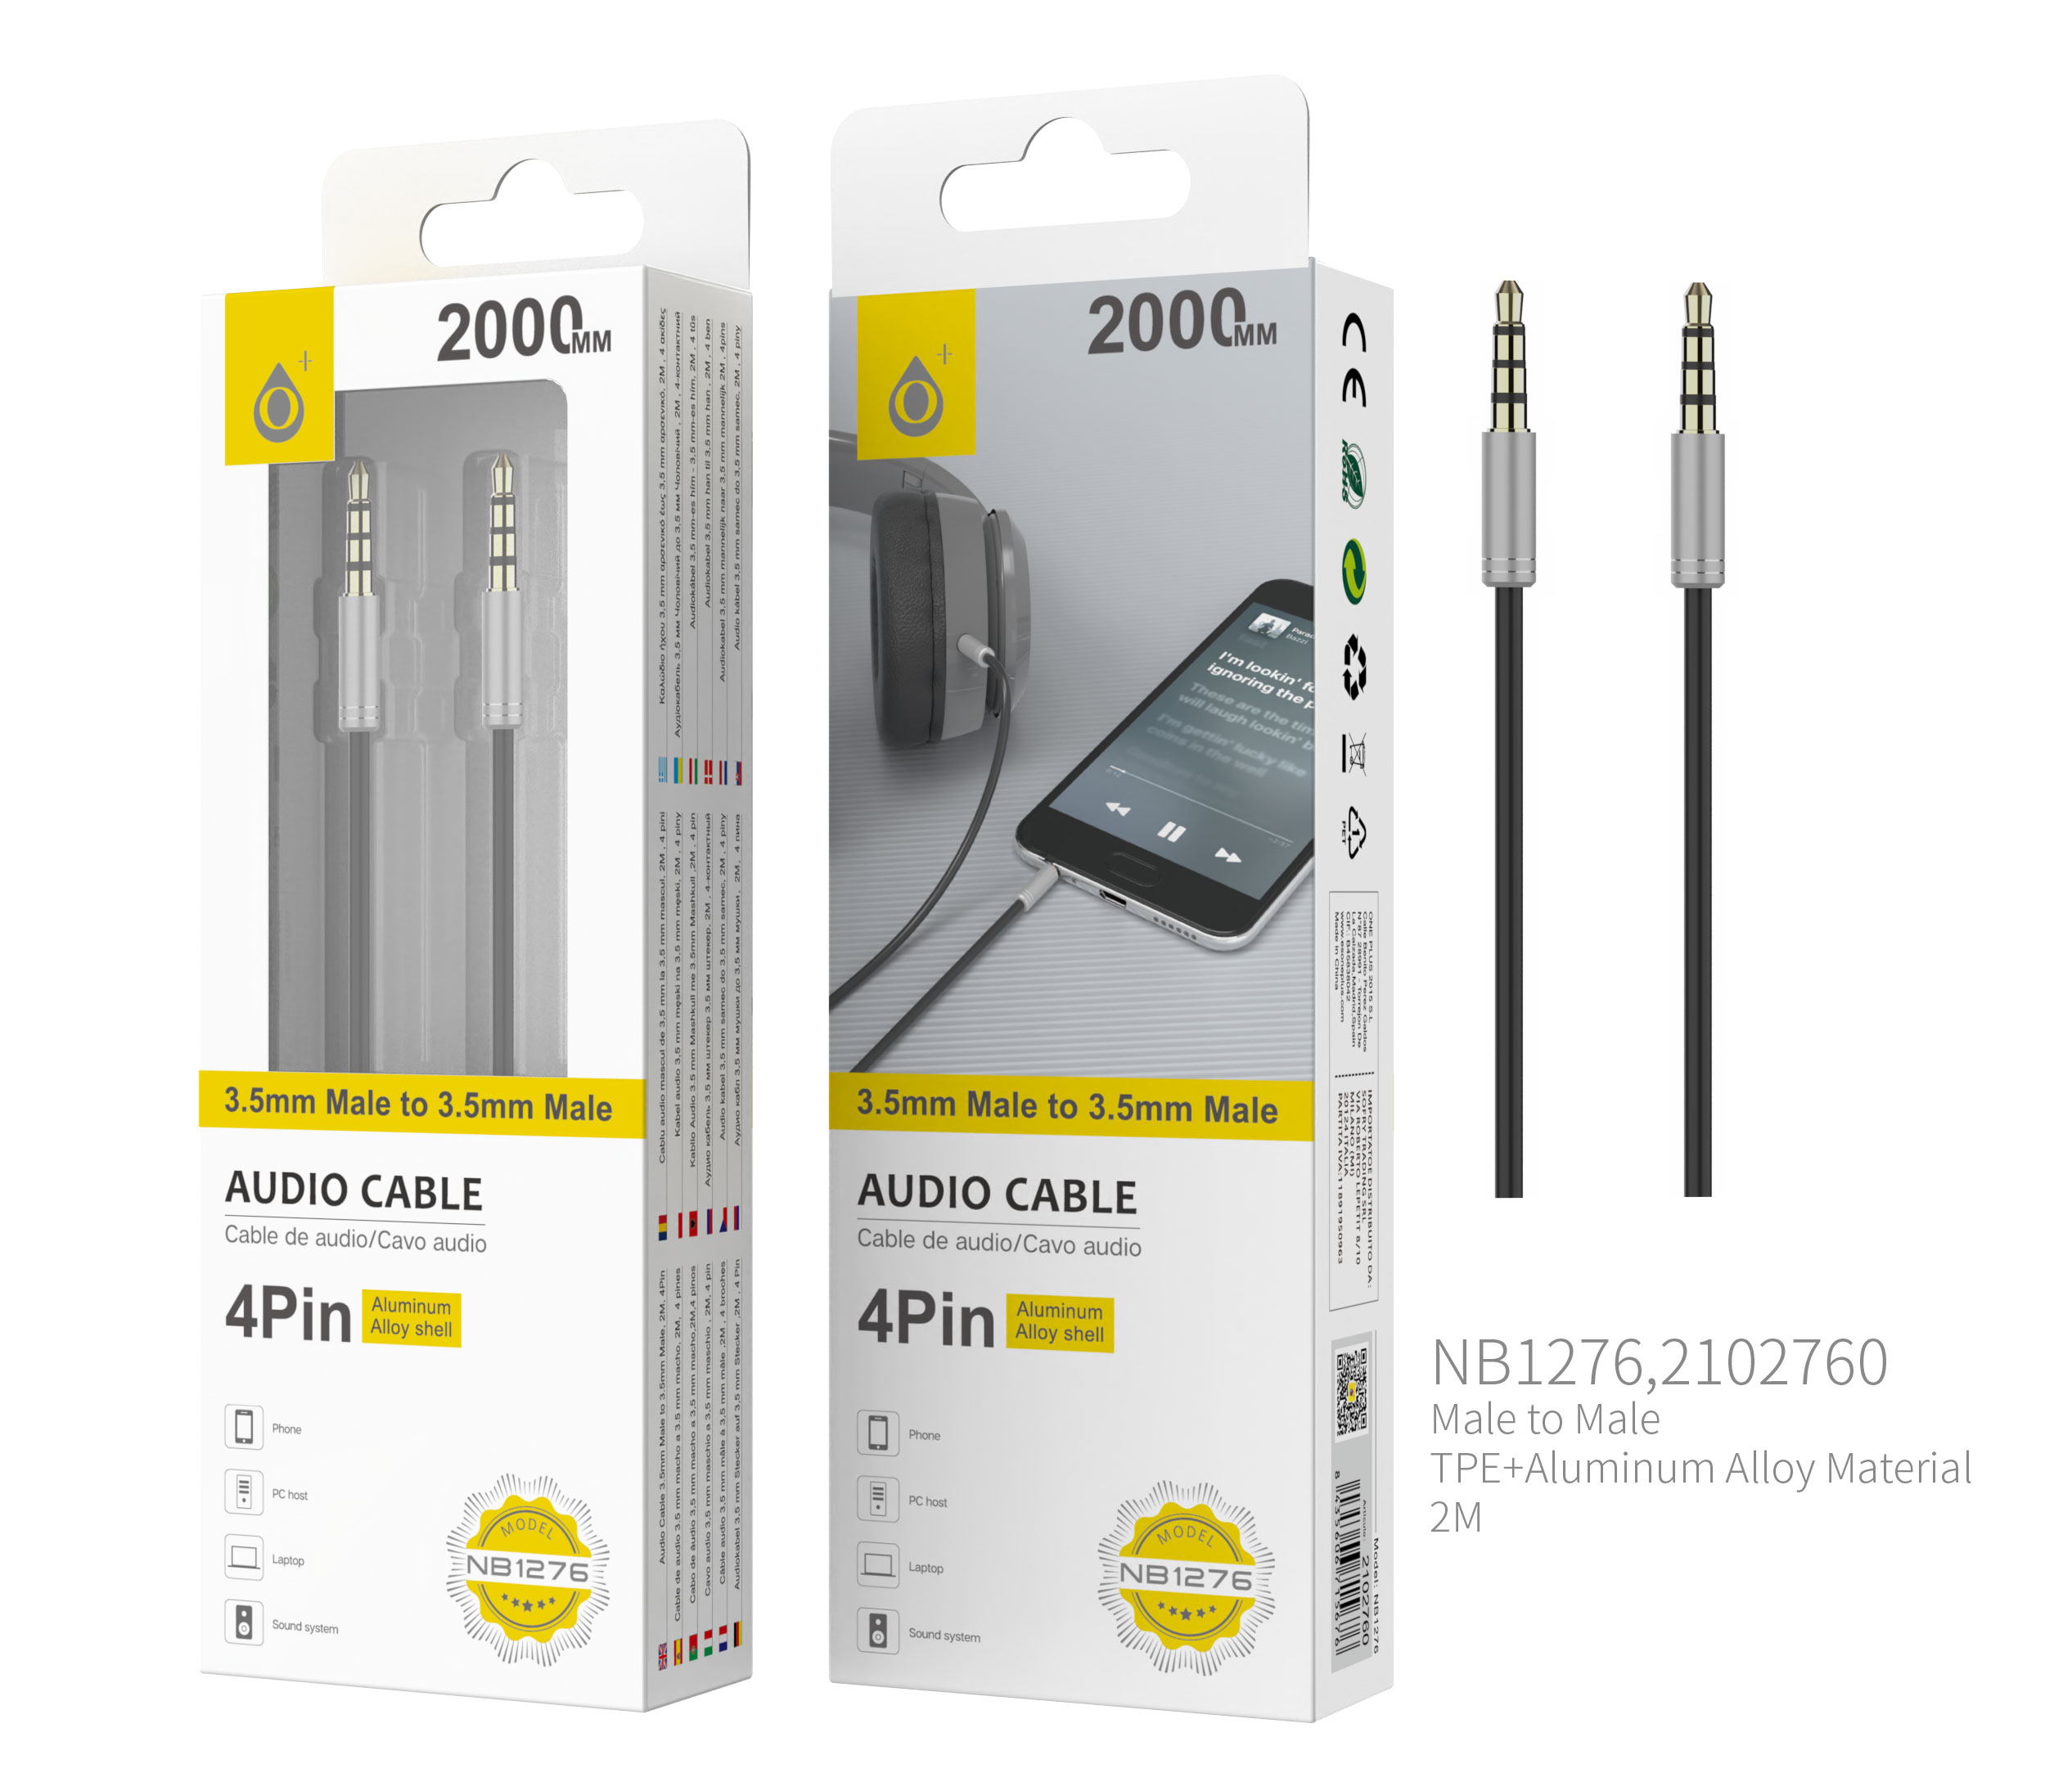 NB1276 PL Cable de Audio Fox de Aluminio de 3.5mm a 3.5mm Macho a Macho, 4Pin, Longitud 2 M, Plata